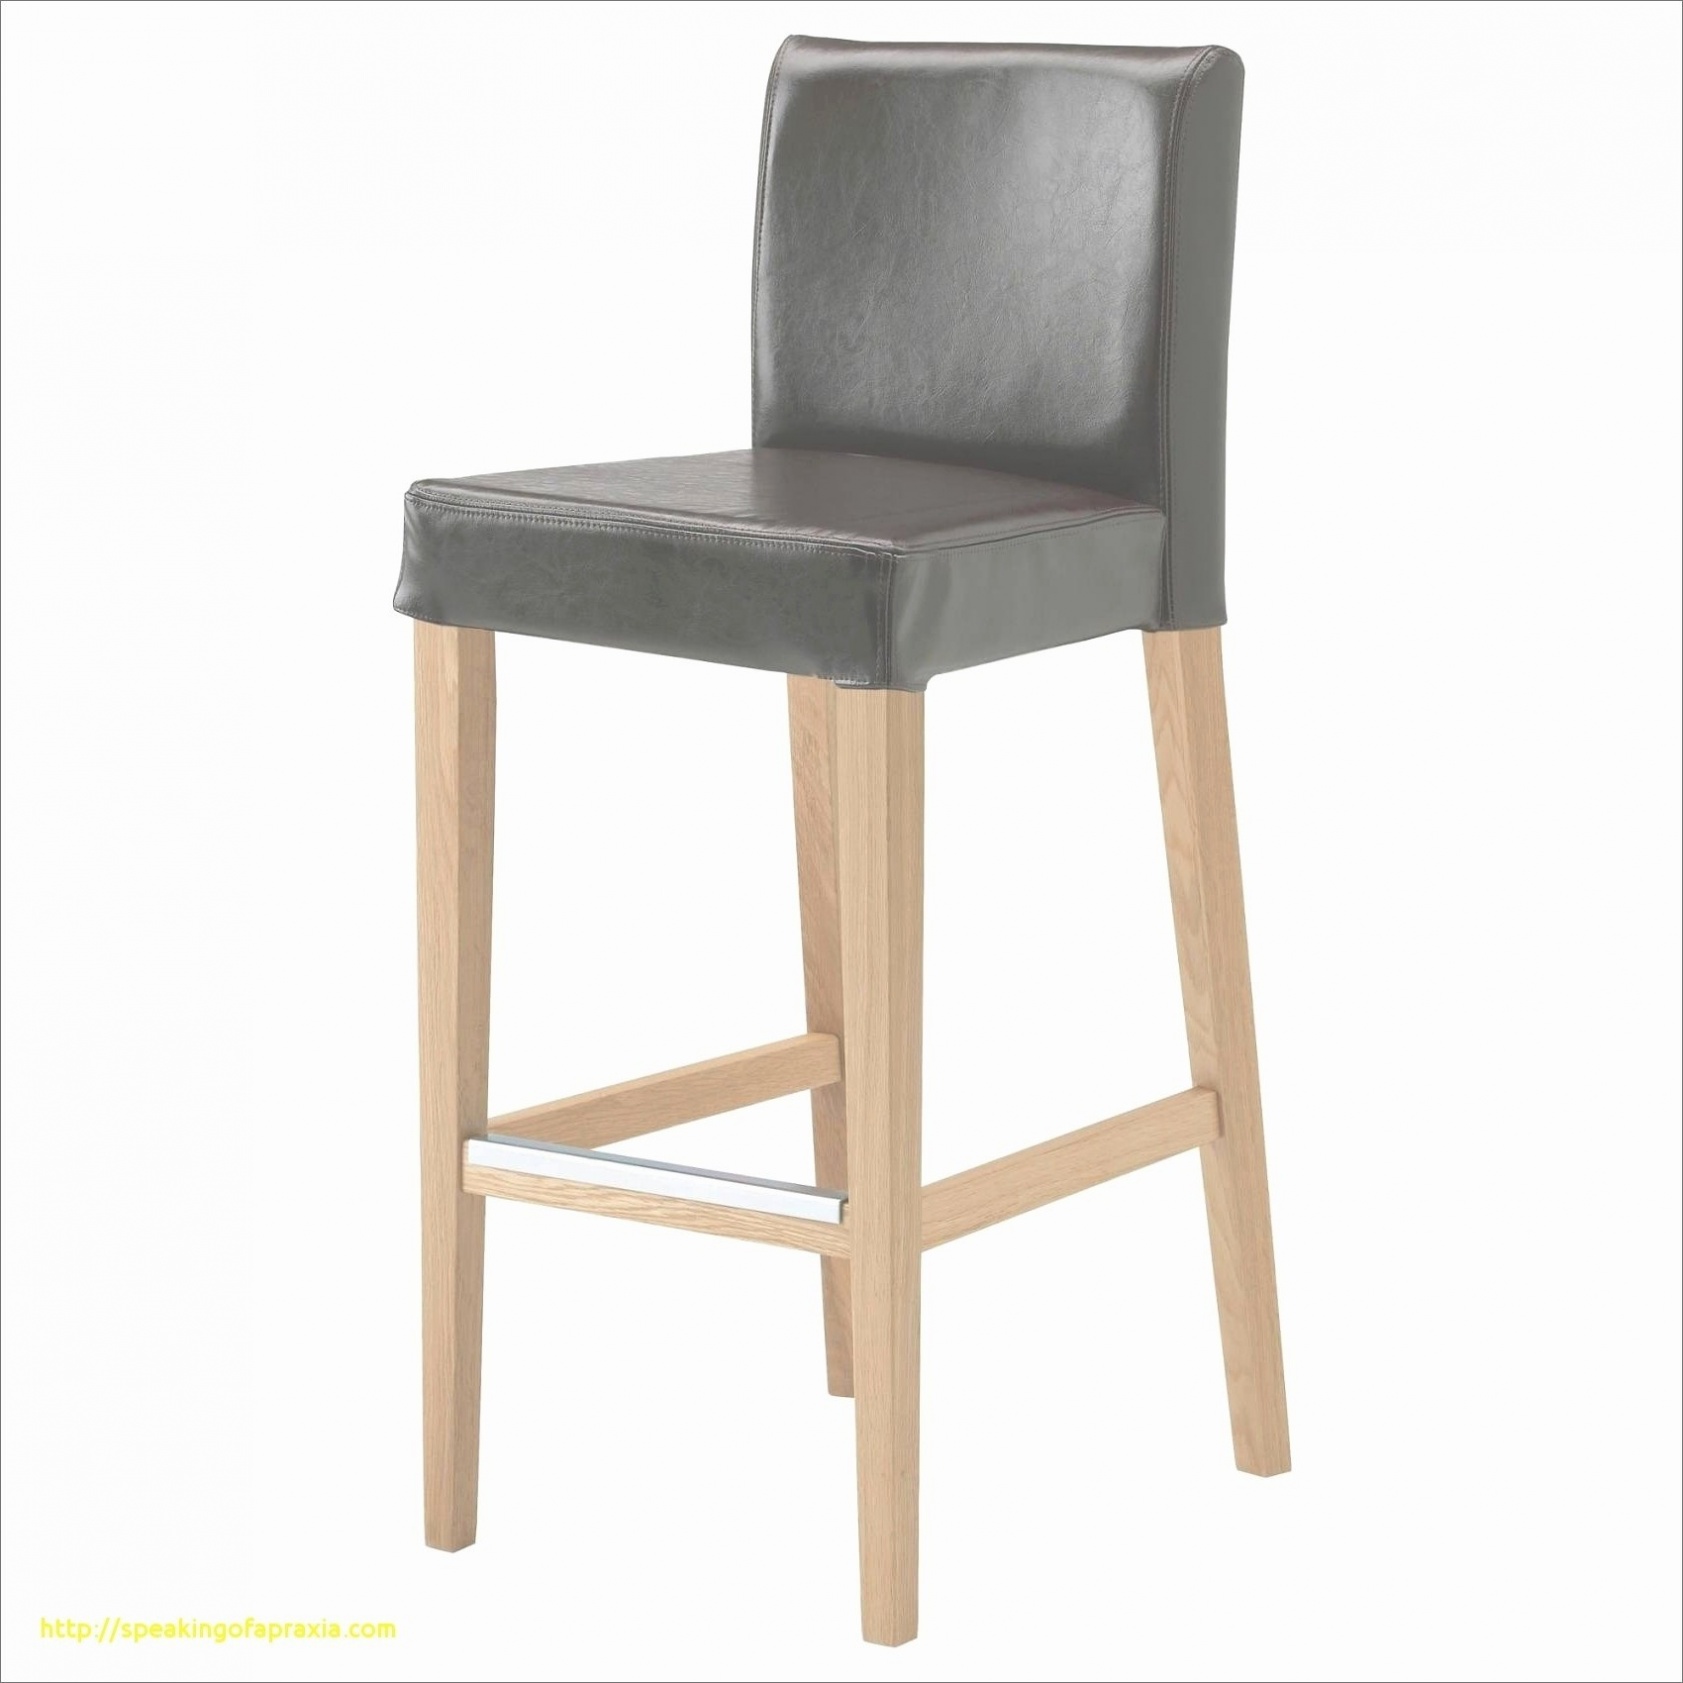 30 impressionnant chaise exterieur fauteuil rond exterieur of fauteuil rond exterieur